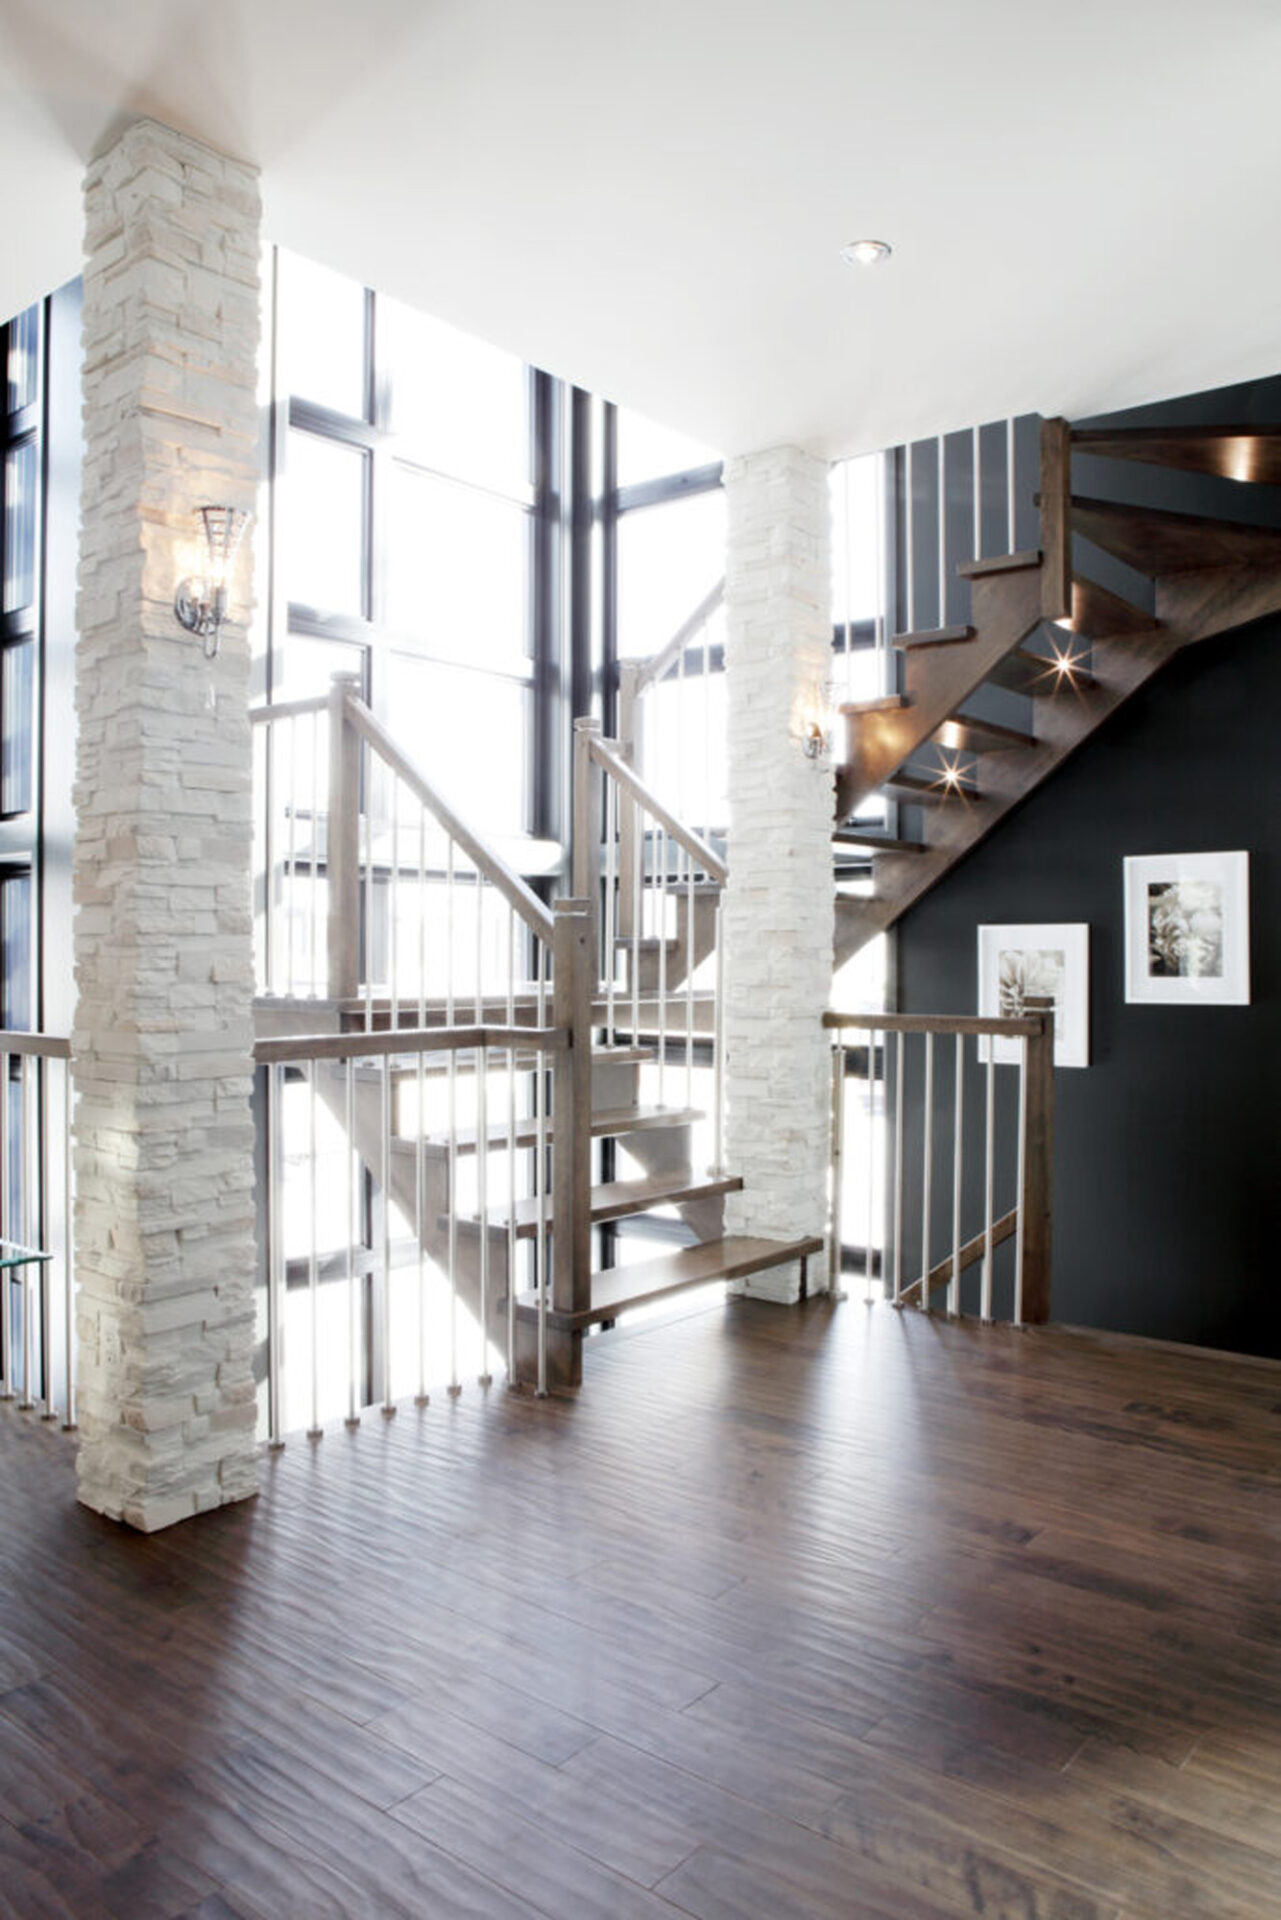 Escalier deluxe, design intérieur deluxe, colonne en pierre blanche